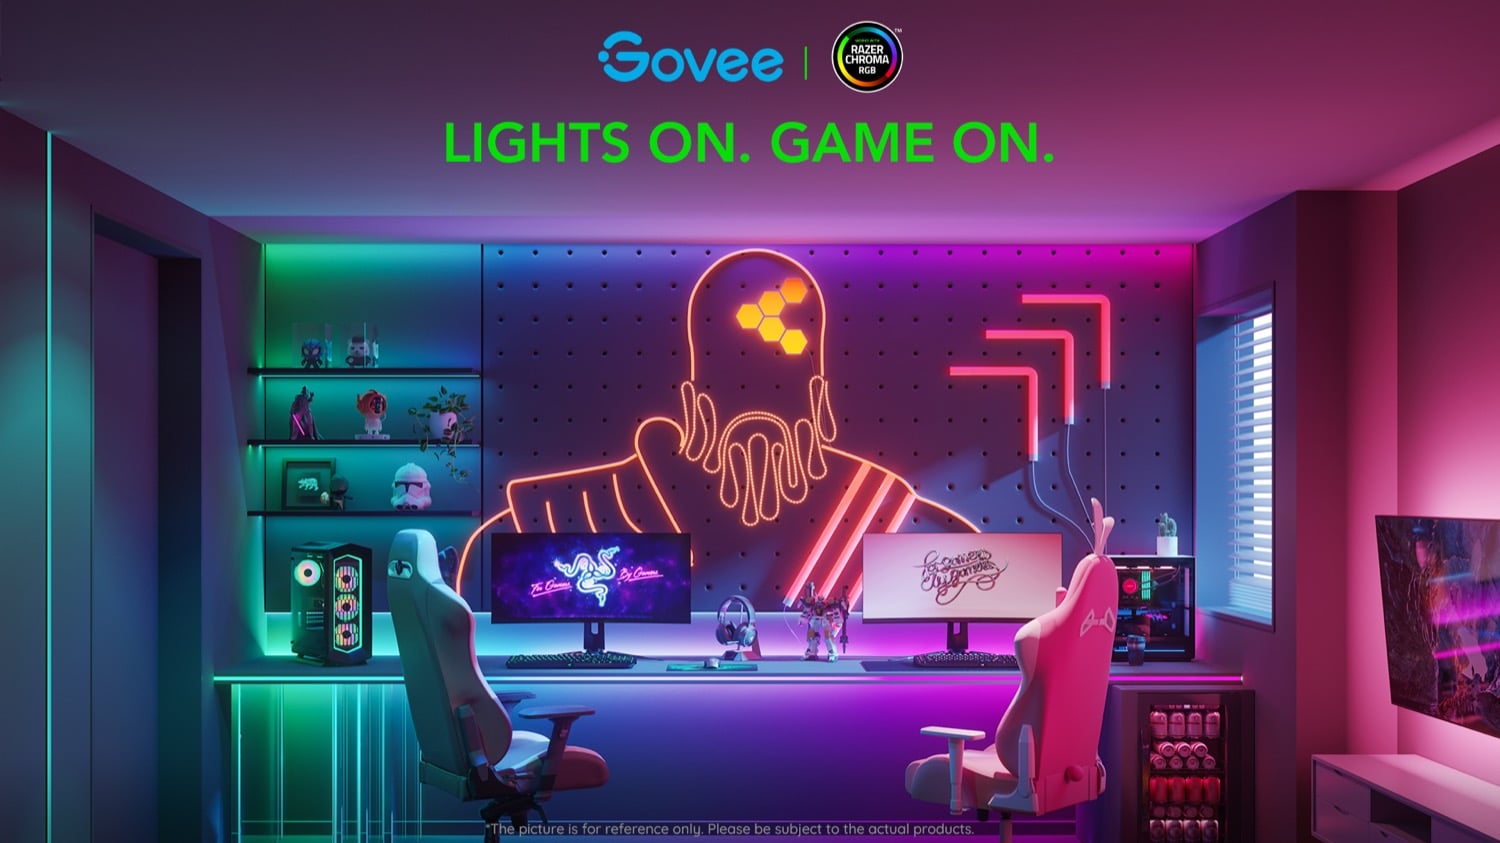 Smarte Beleuchtung von Govee wird mit Razer Chroma kompatibel